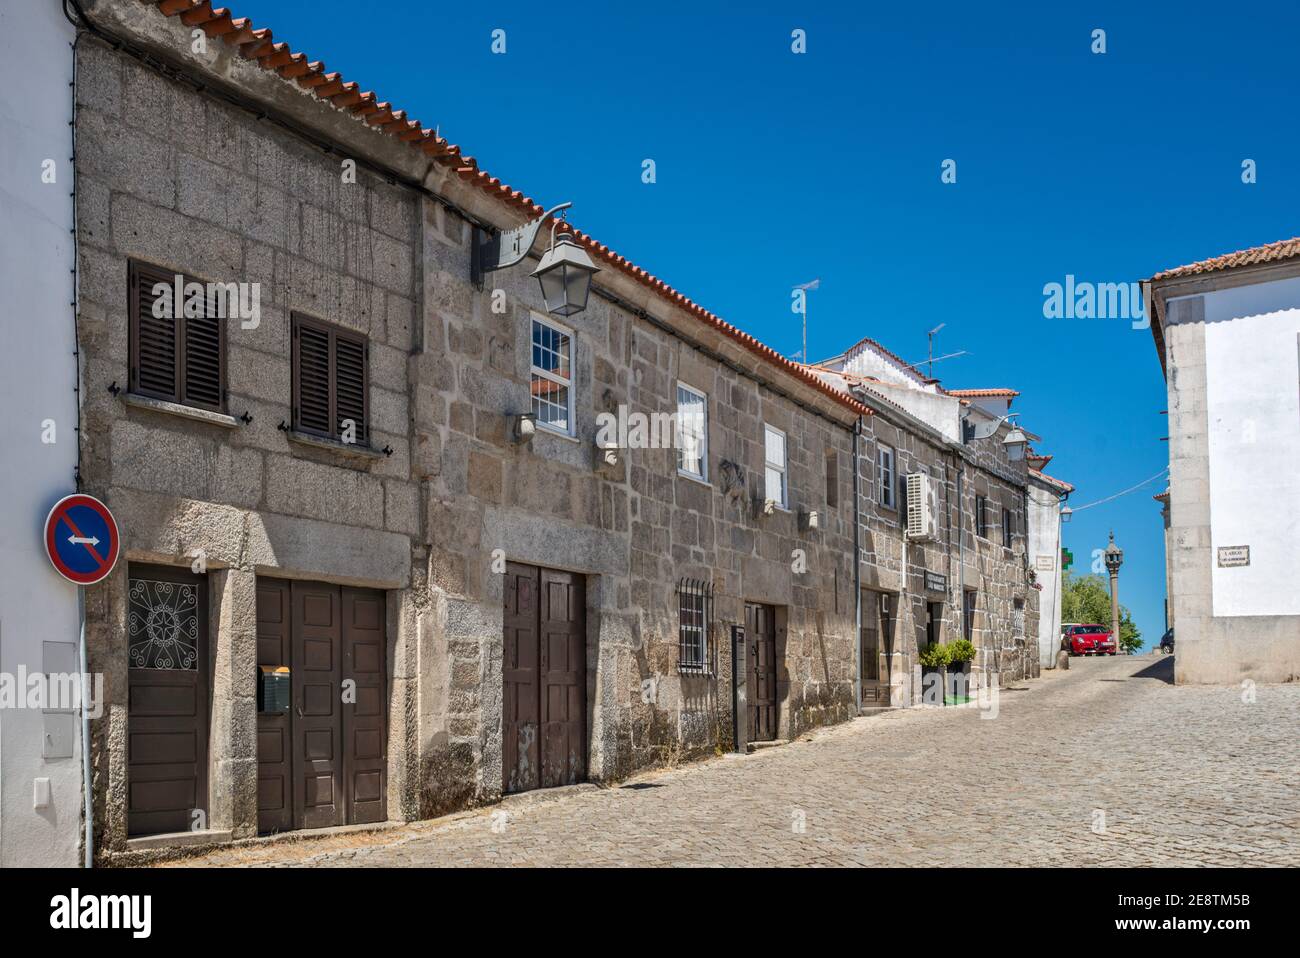 Casa do Gato Preto (House of the Black Cat) at former Jewish quarter in Trancoso, Centro region, Portugal Stock Photo